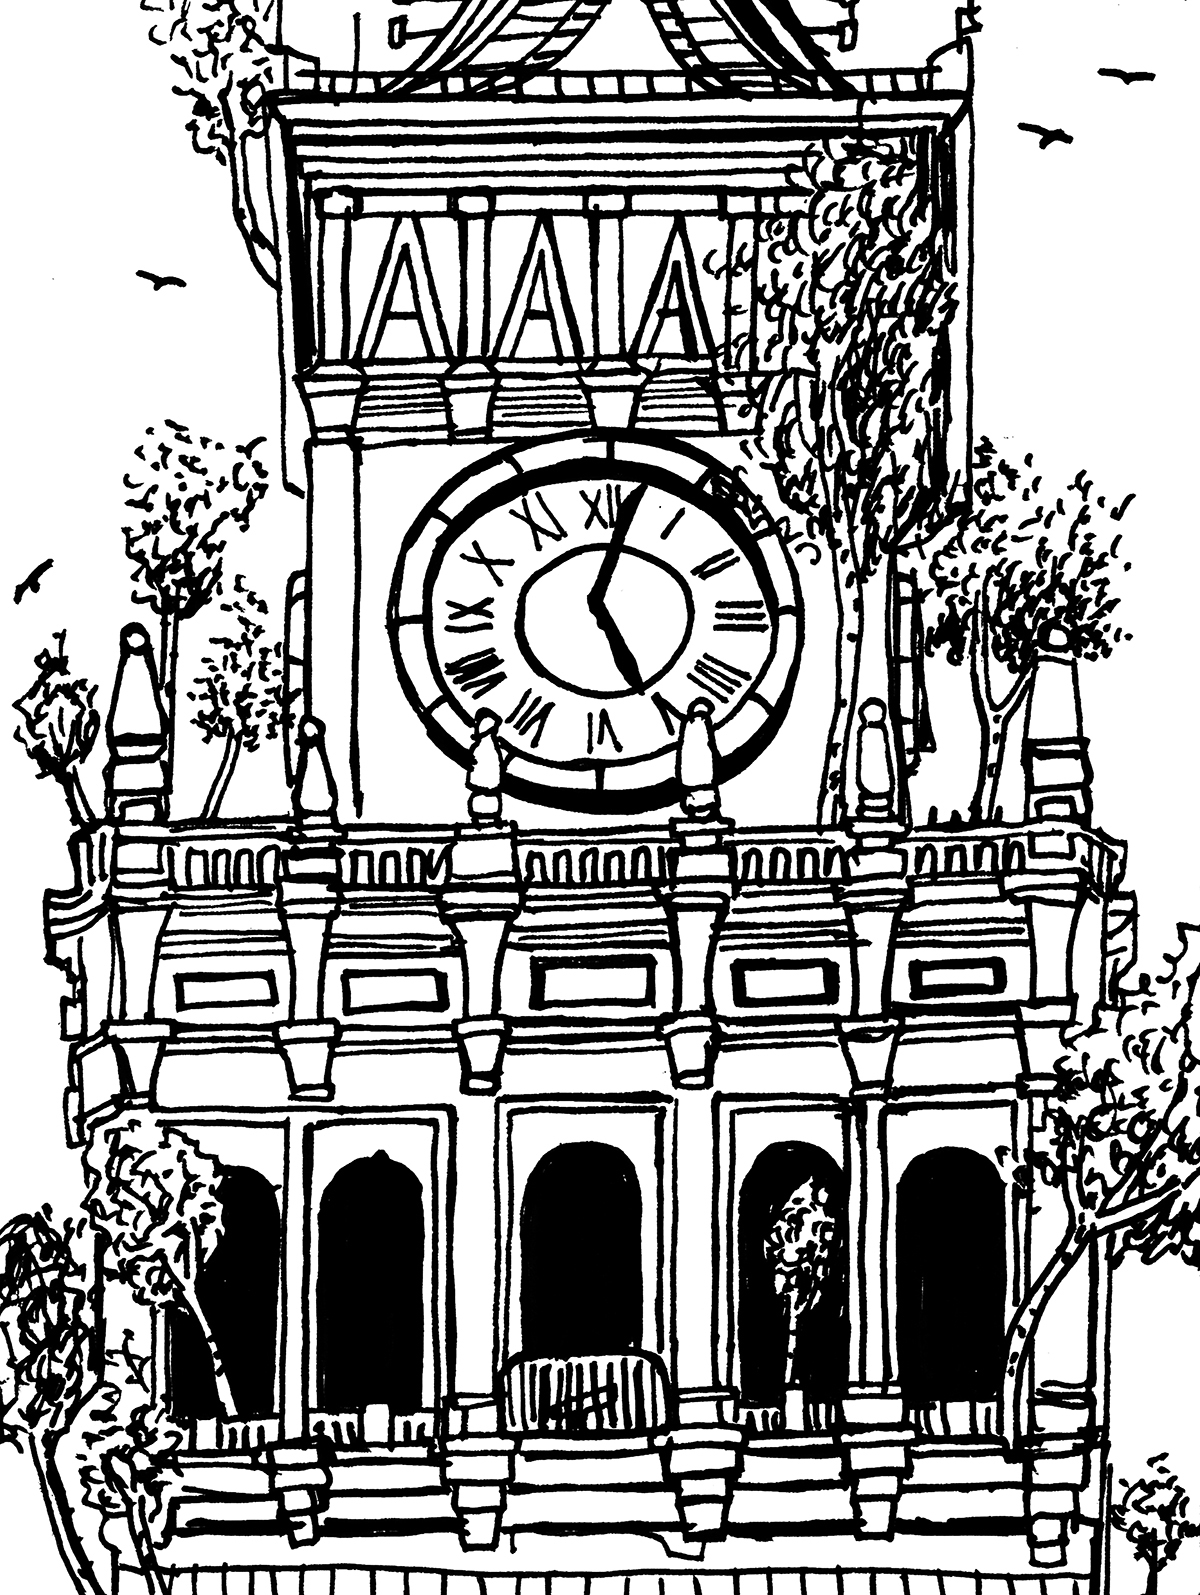 Zbliżenie na taras widokowy i zegar Pałacu Kultury i Nauki. Różne poziomy tarasu porastają liczne brzozy